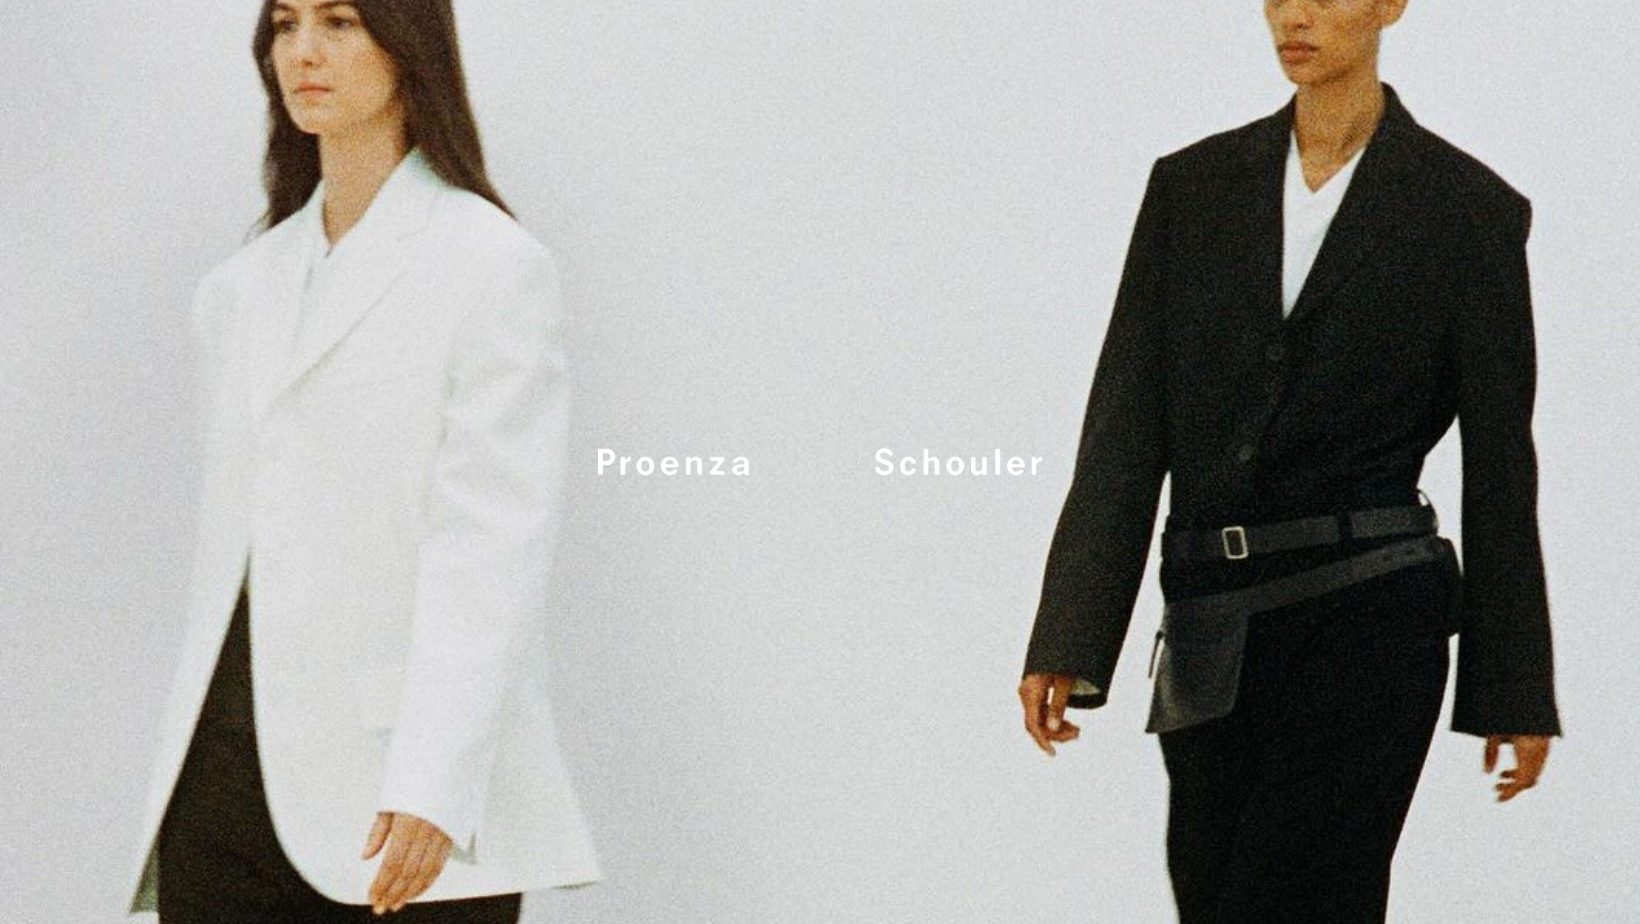 Proenza Schouler SS24 kollektsioon on üdini truu brändi urbanistlikule käekirjale - kevadsuvise kollektsiooni siluetid on minimalistlikud ja modernsed, kuid sam